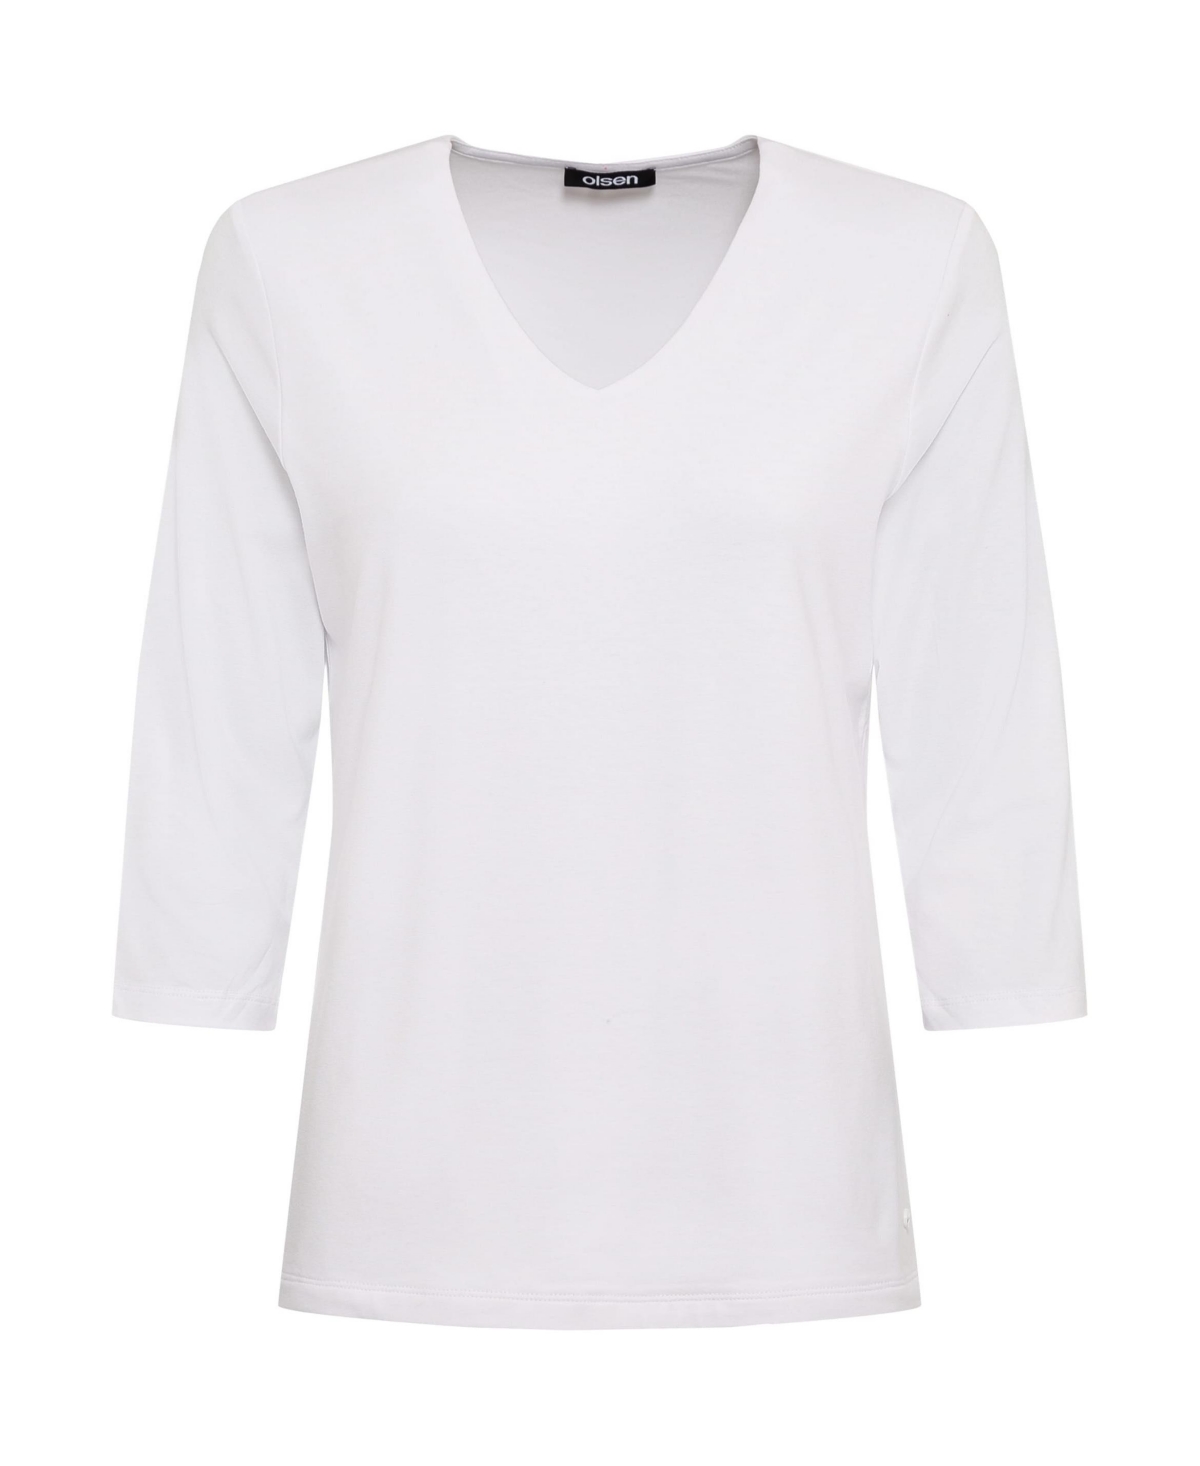 Women's 3/4 Sleeve V-Neck T-Shirt - White